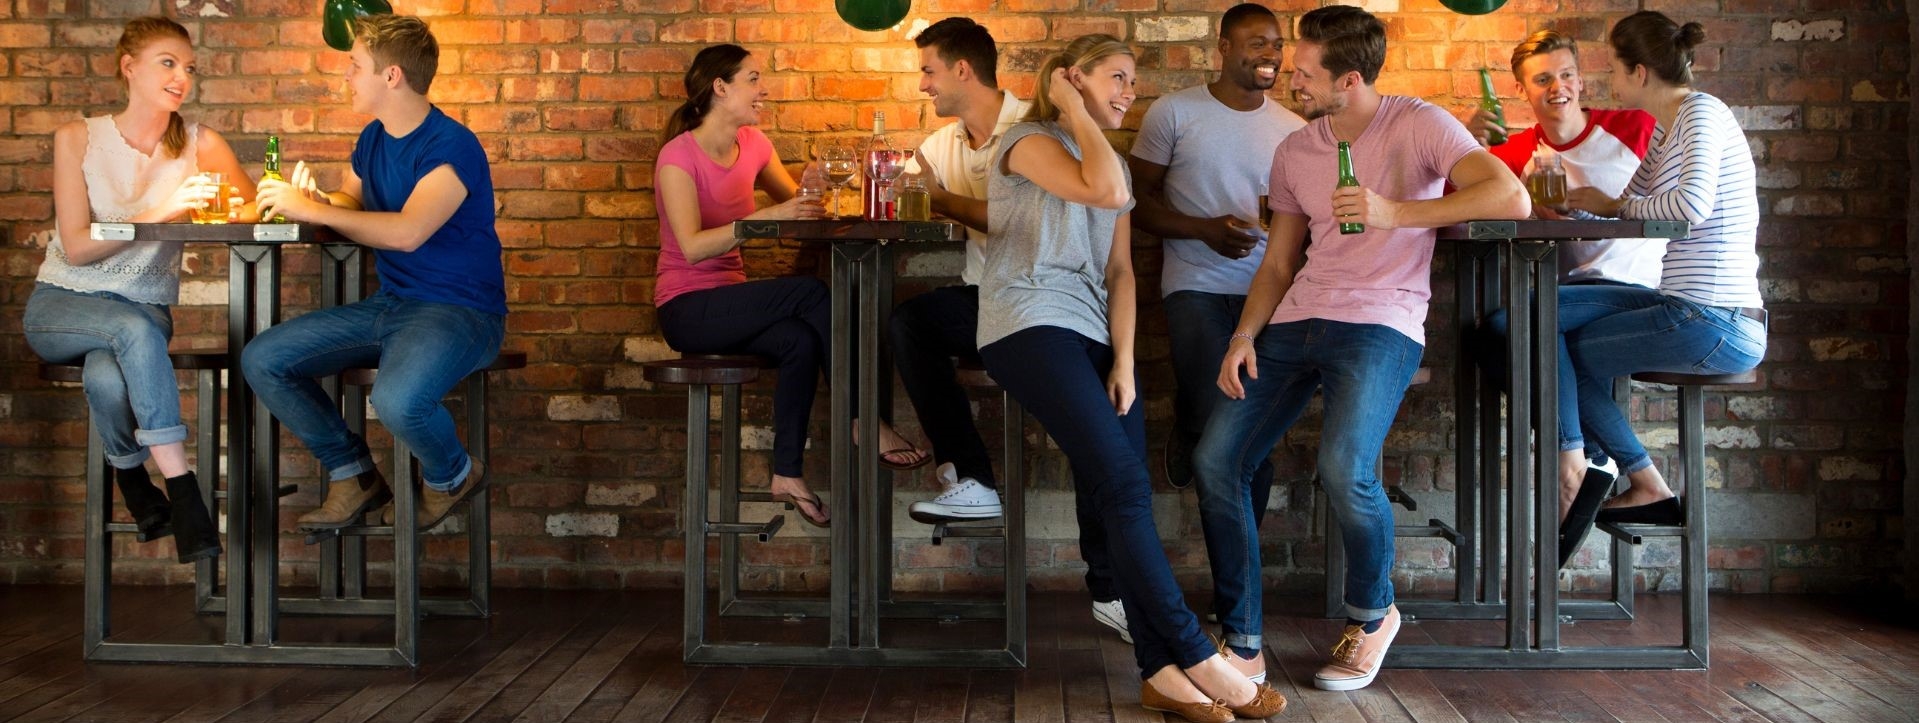  Cum poți face ca masa să fie o experiență de socializare excelentă pentru clienții tăi?